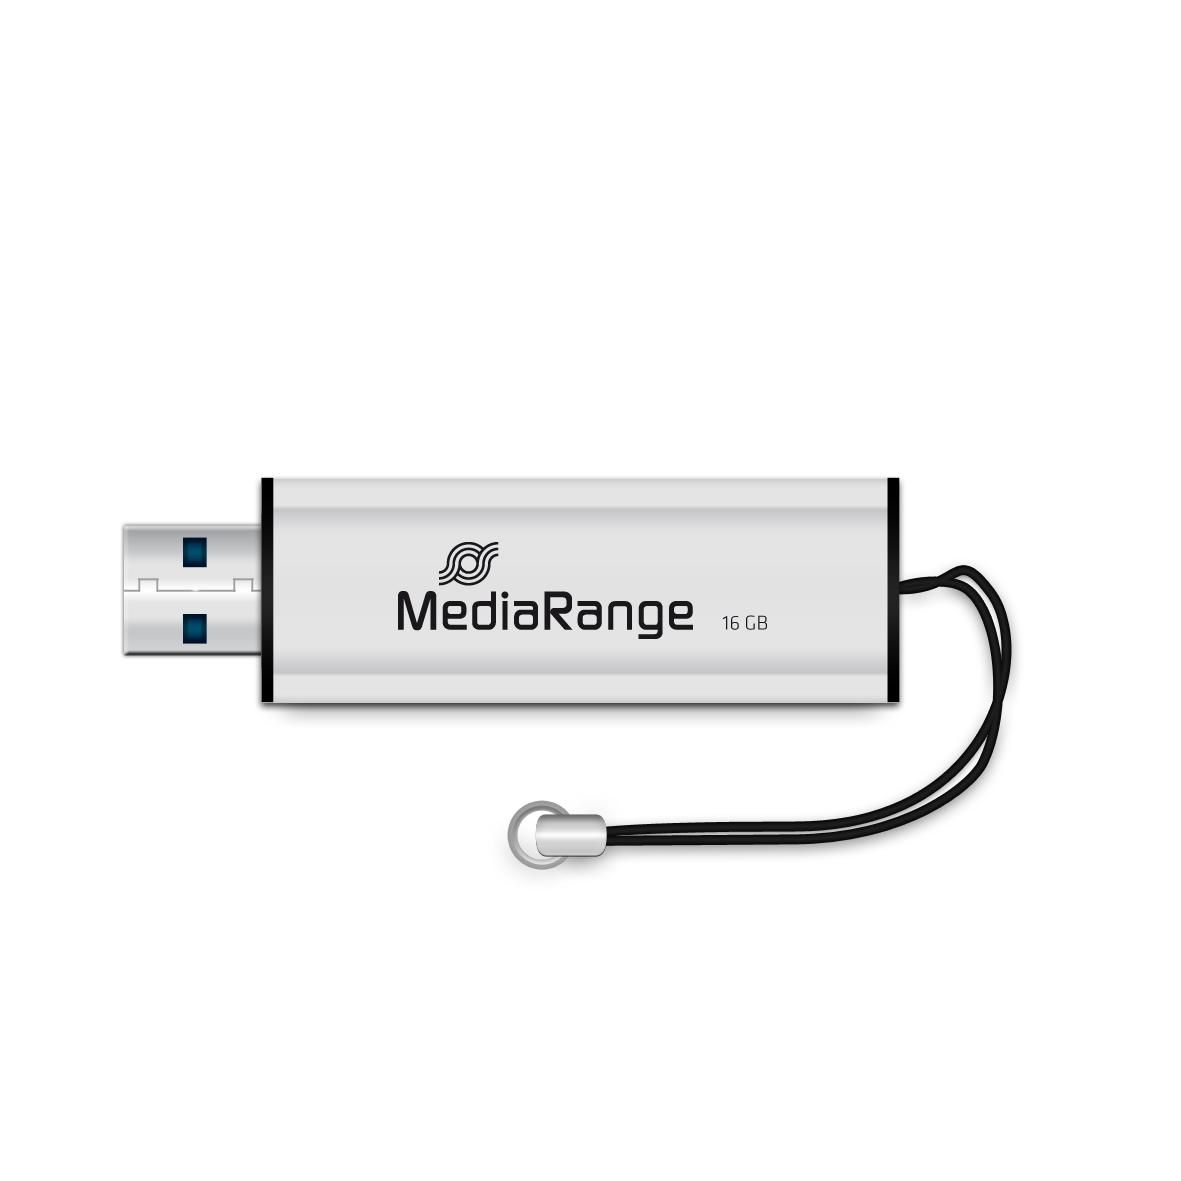 MEDIARANGE USB-Stick 16GB MediaRange USB 3.0 SuperSpeed